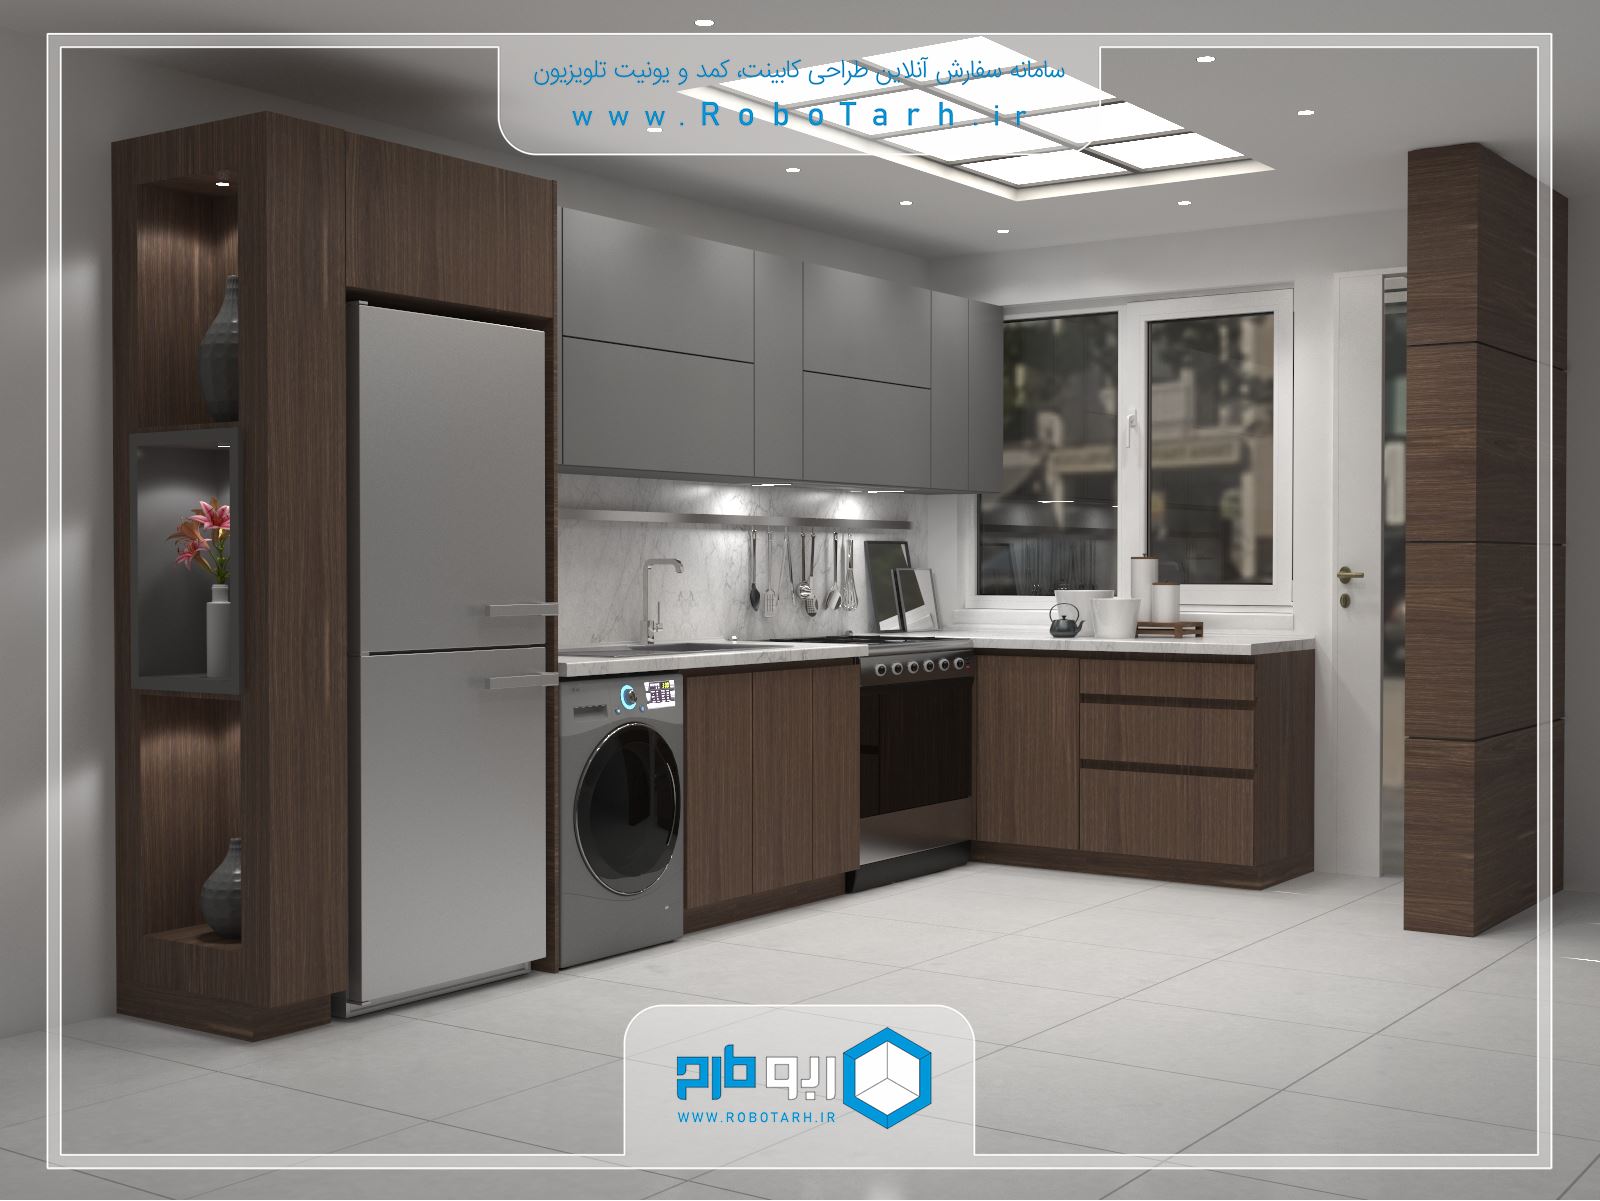 طراحی کابینت آشپزخانه کوچک به سبک مدرن با رنگ قهوای و خاکستری - ربوطرح